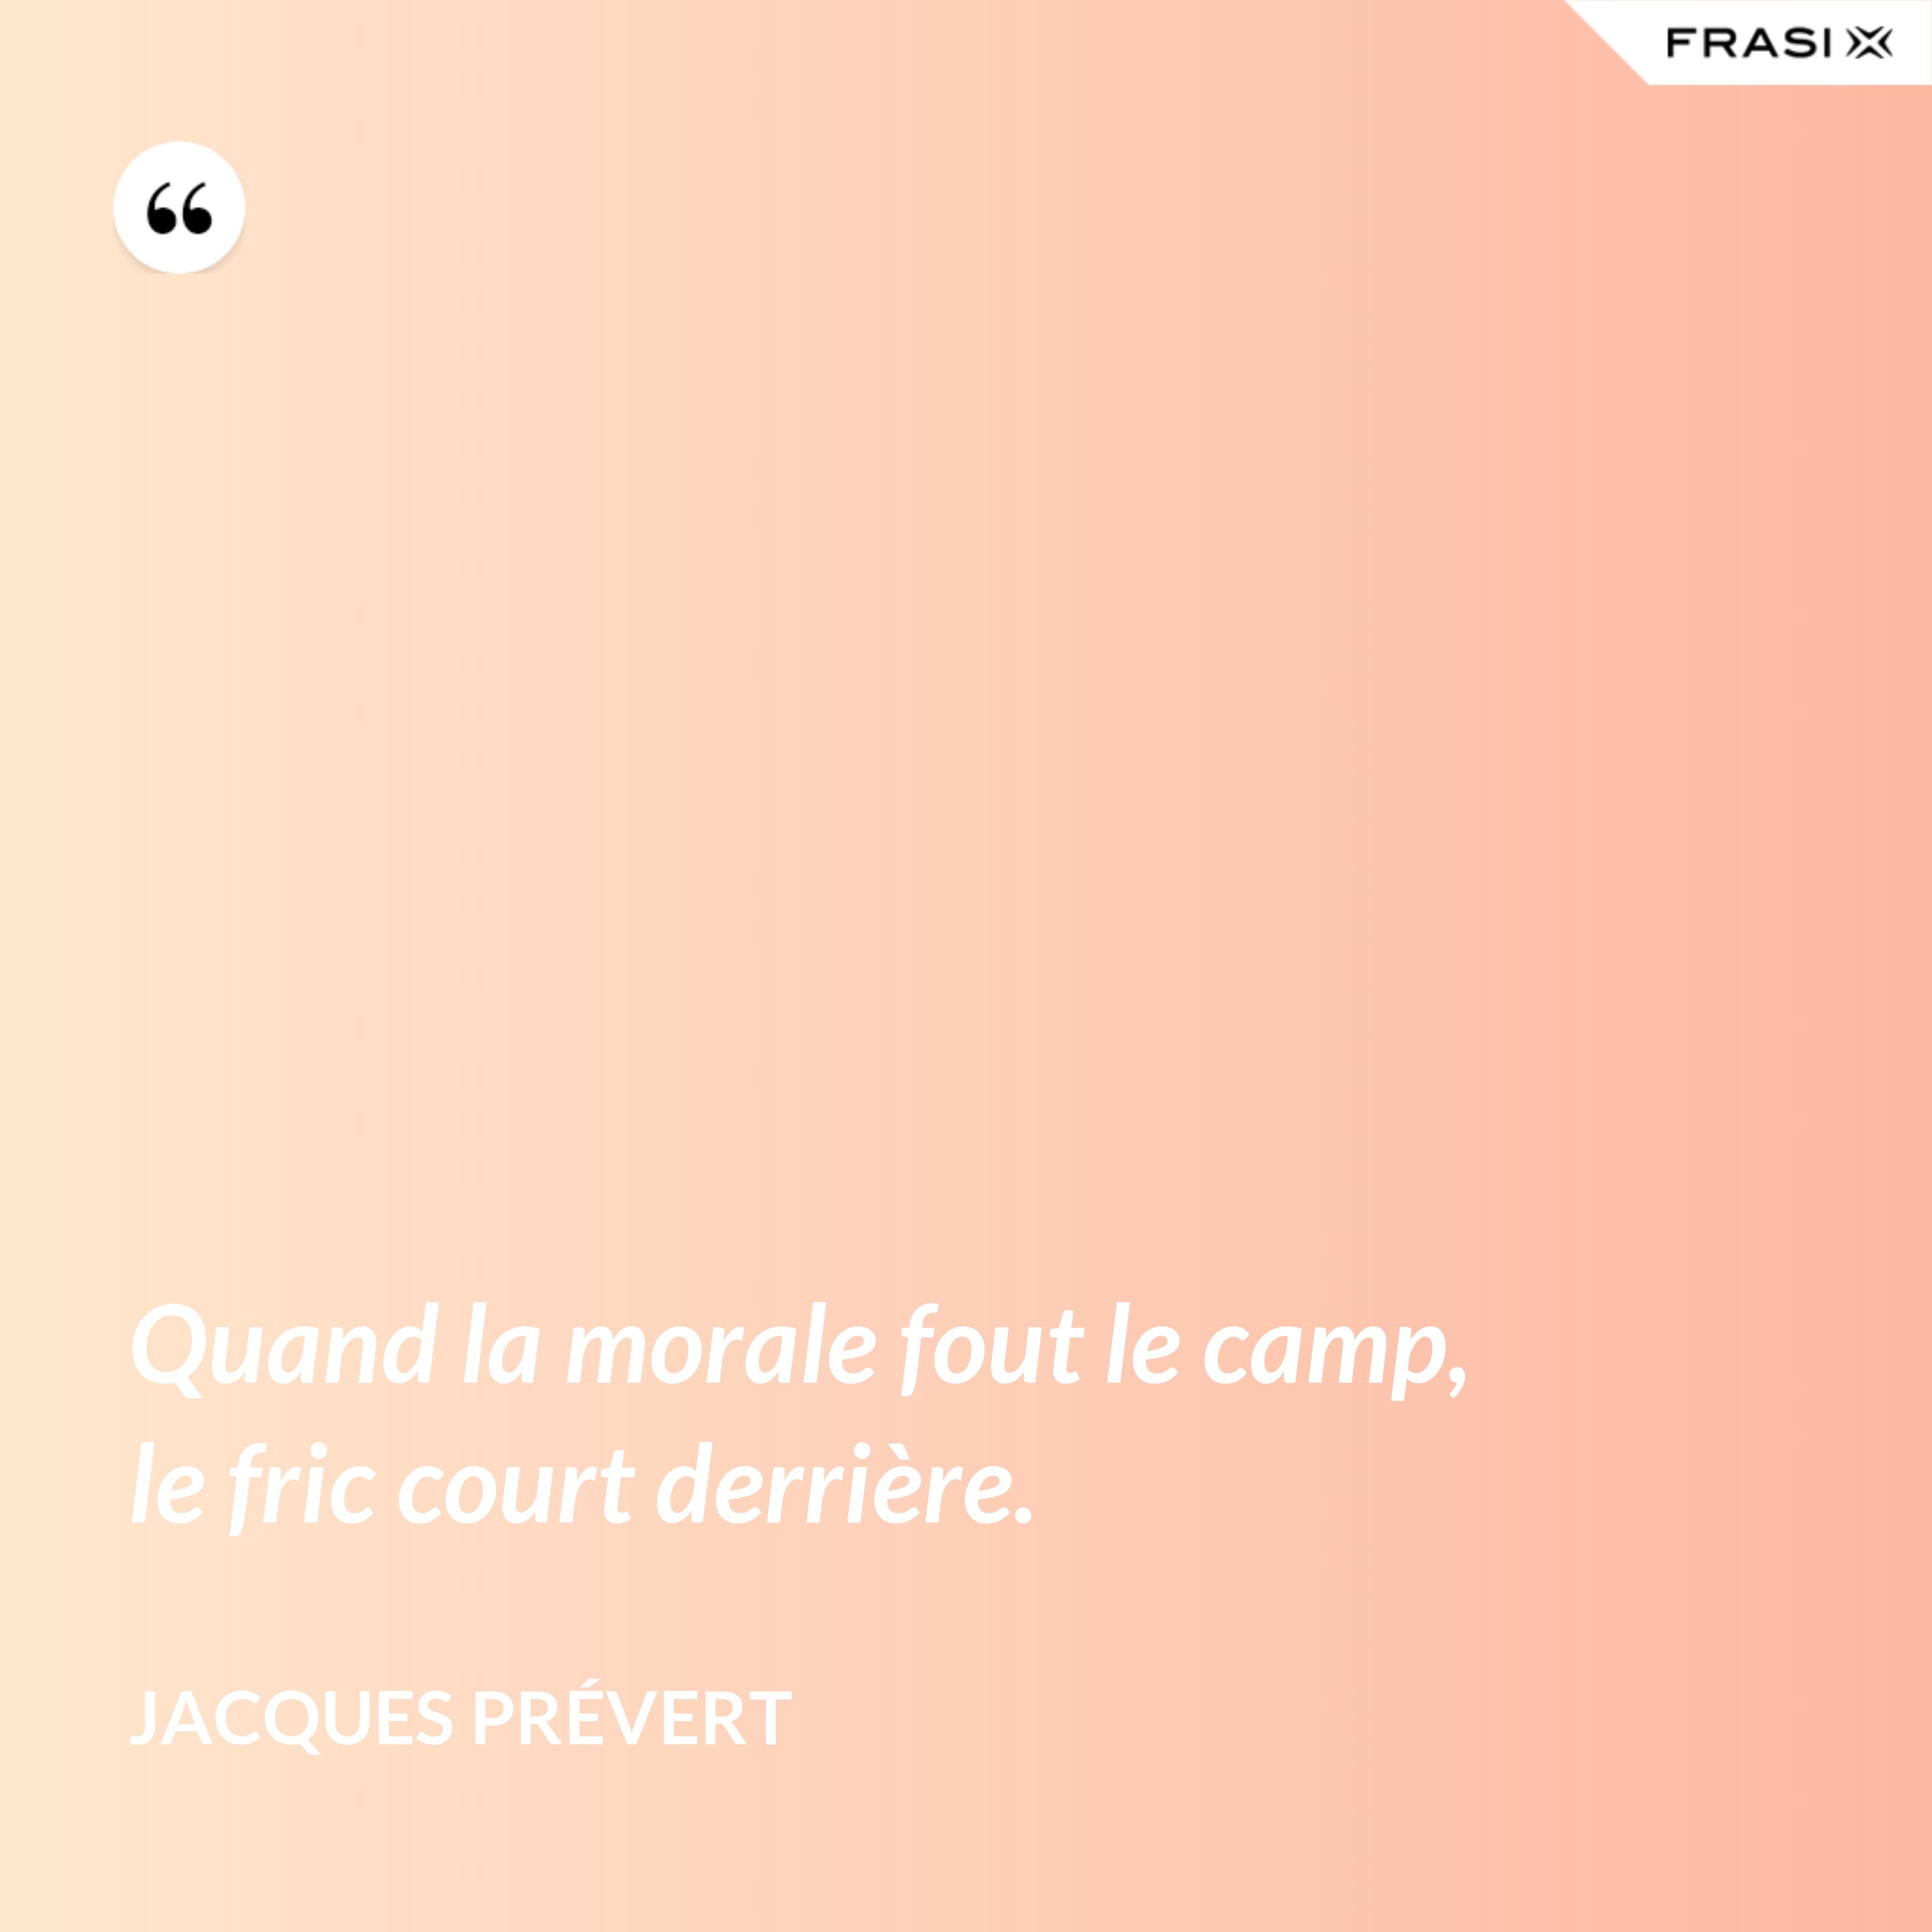 Quand la morale fout le camp, le fric court derrière. - Jacques Prévert